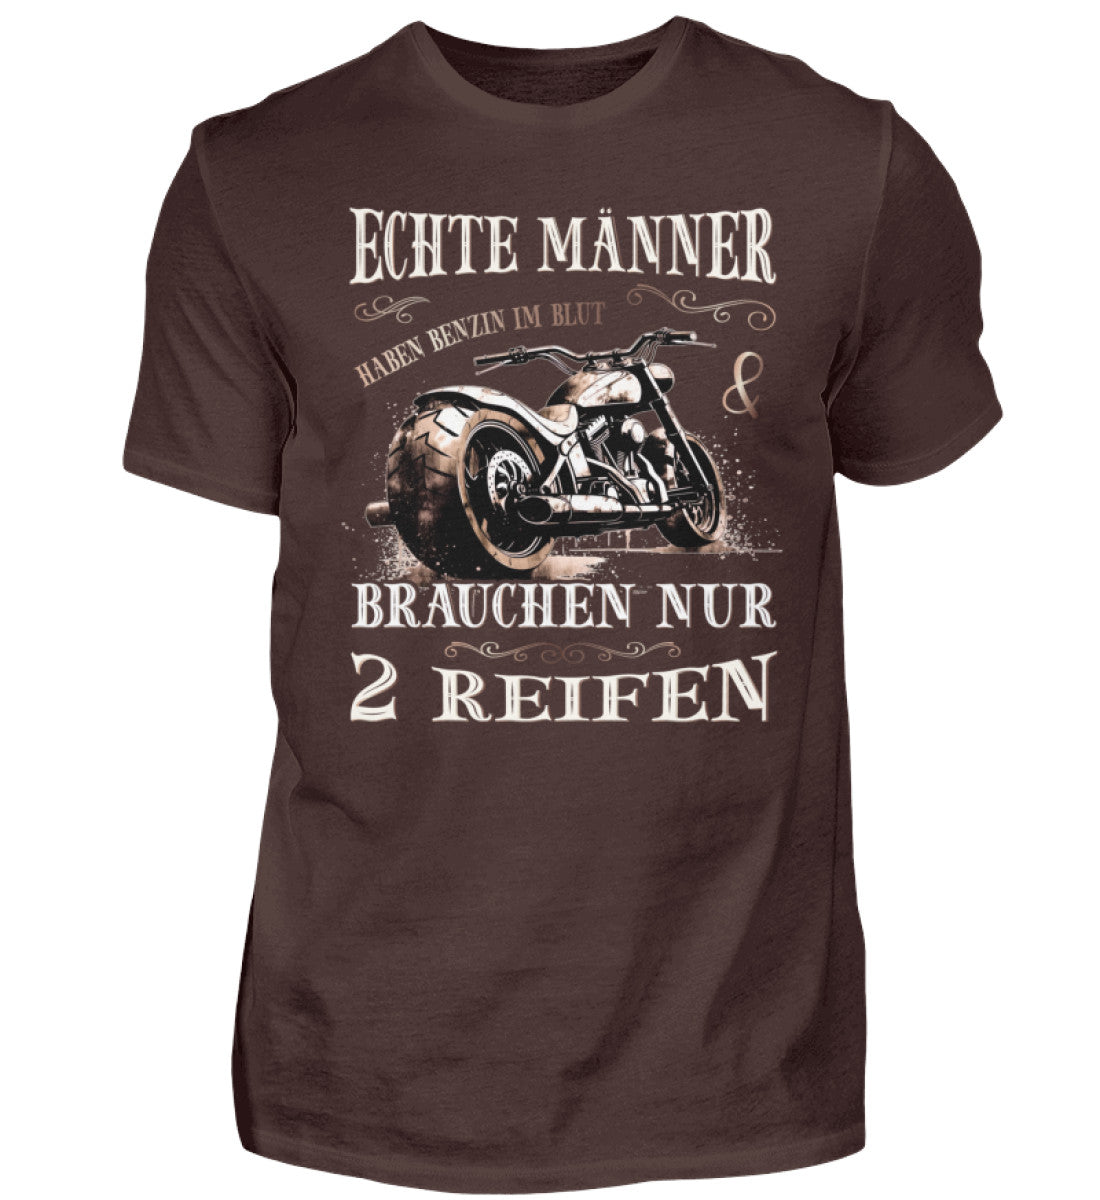 Ein T-Shirt für Motorradfahrer von Wingbikers mit dem Aufdruck, Echte Männer brauchen nur 2 Reifen, in braun.